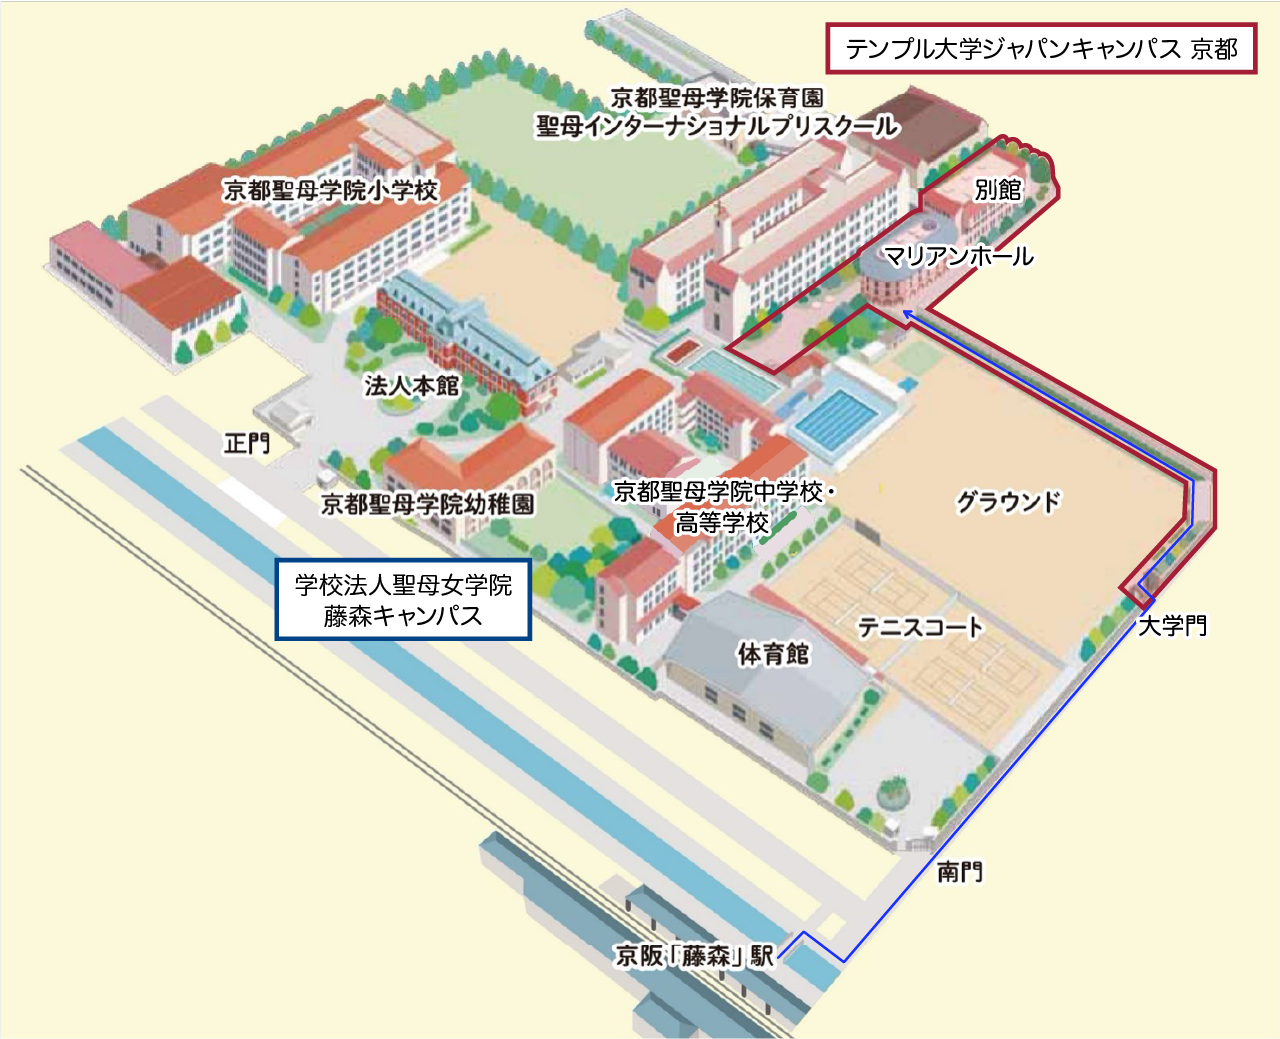 Kyoto Campus Map